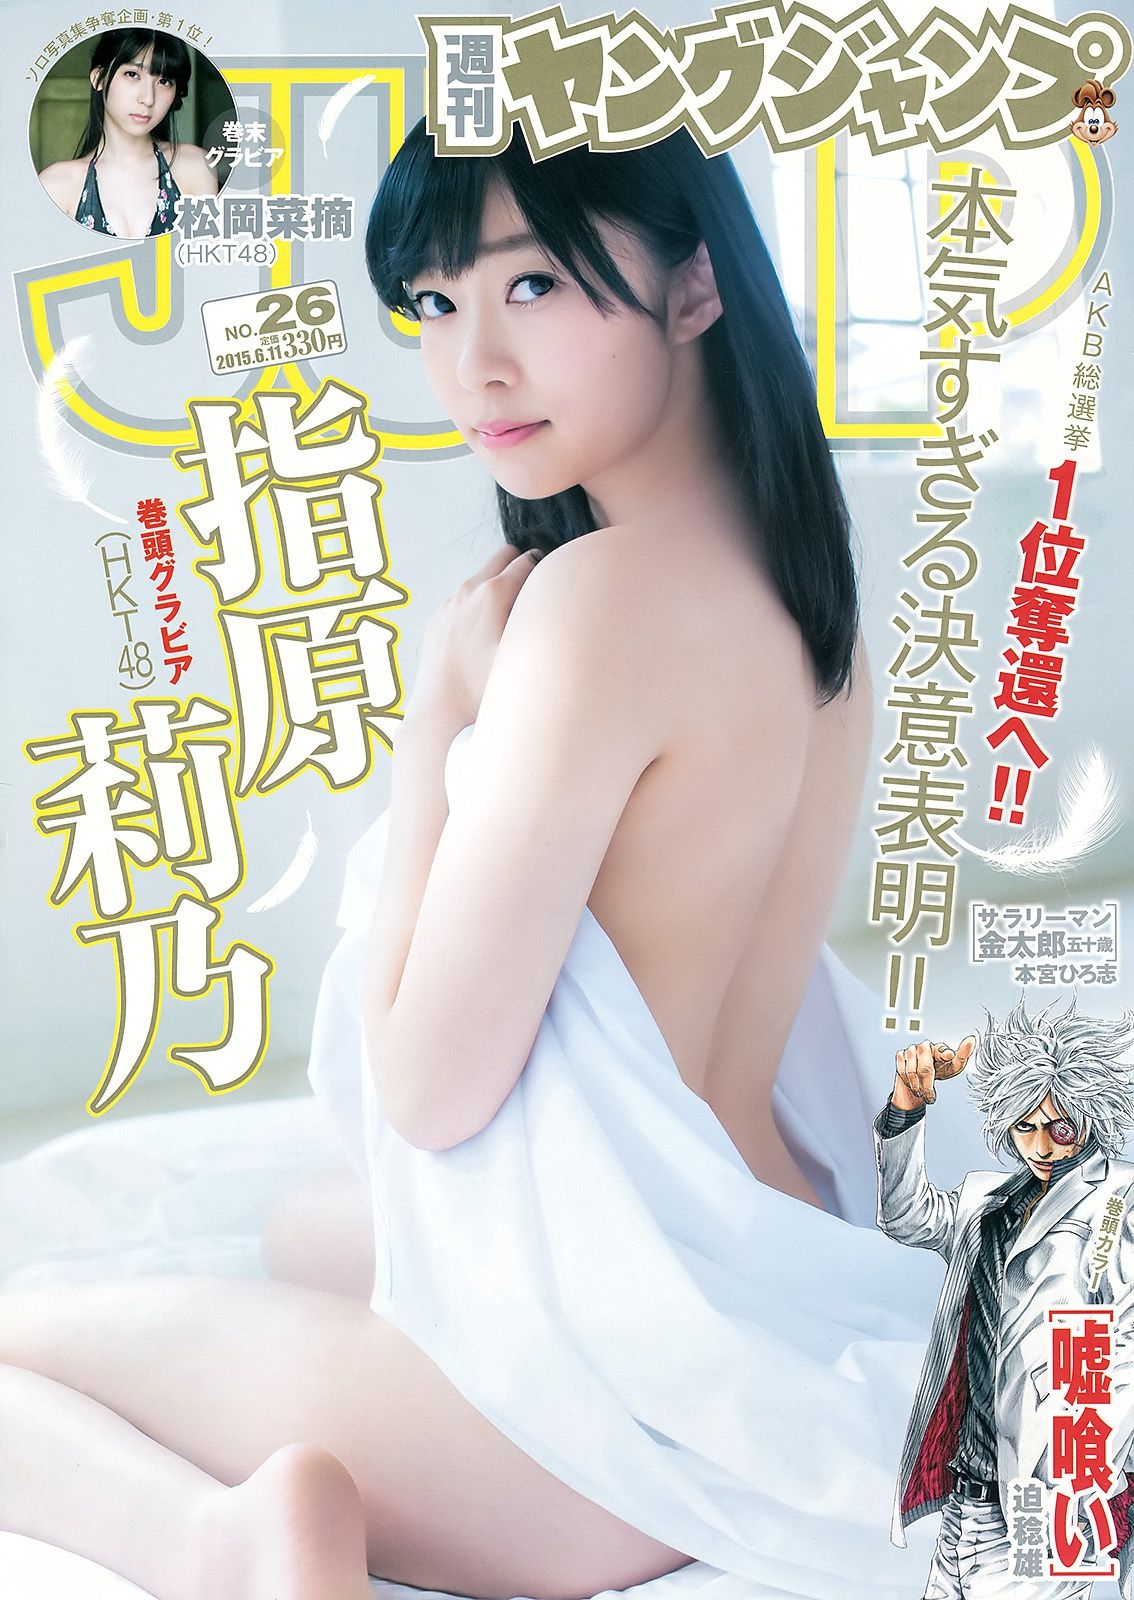 指原莉乃 石川恋 松岡菜摘 [Weekly Young Jump] 2015年No.26 写真杂志 